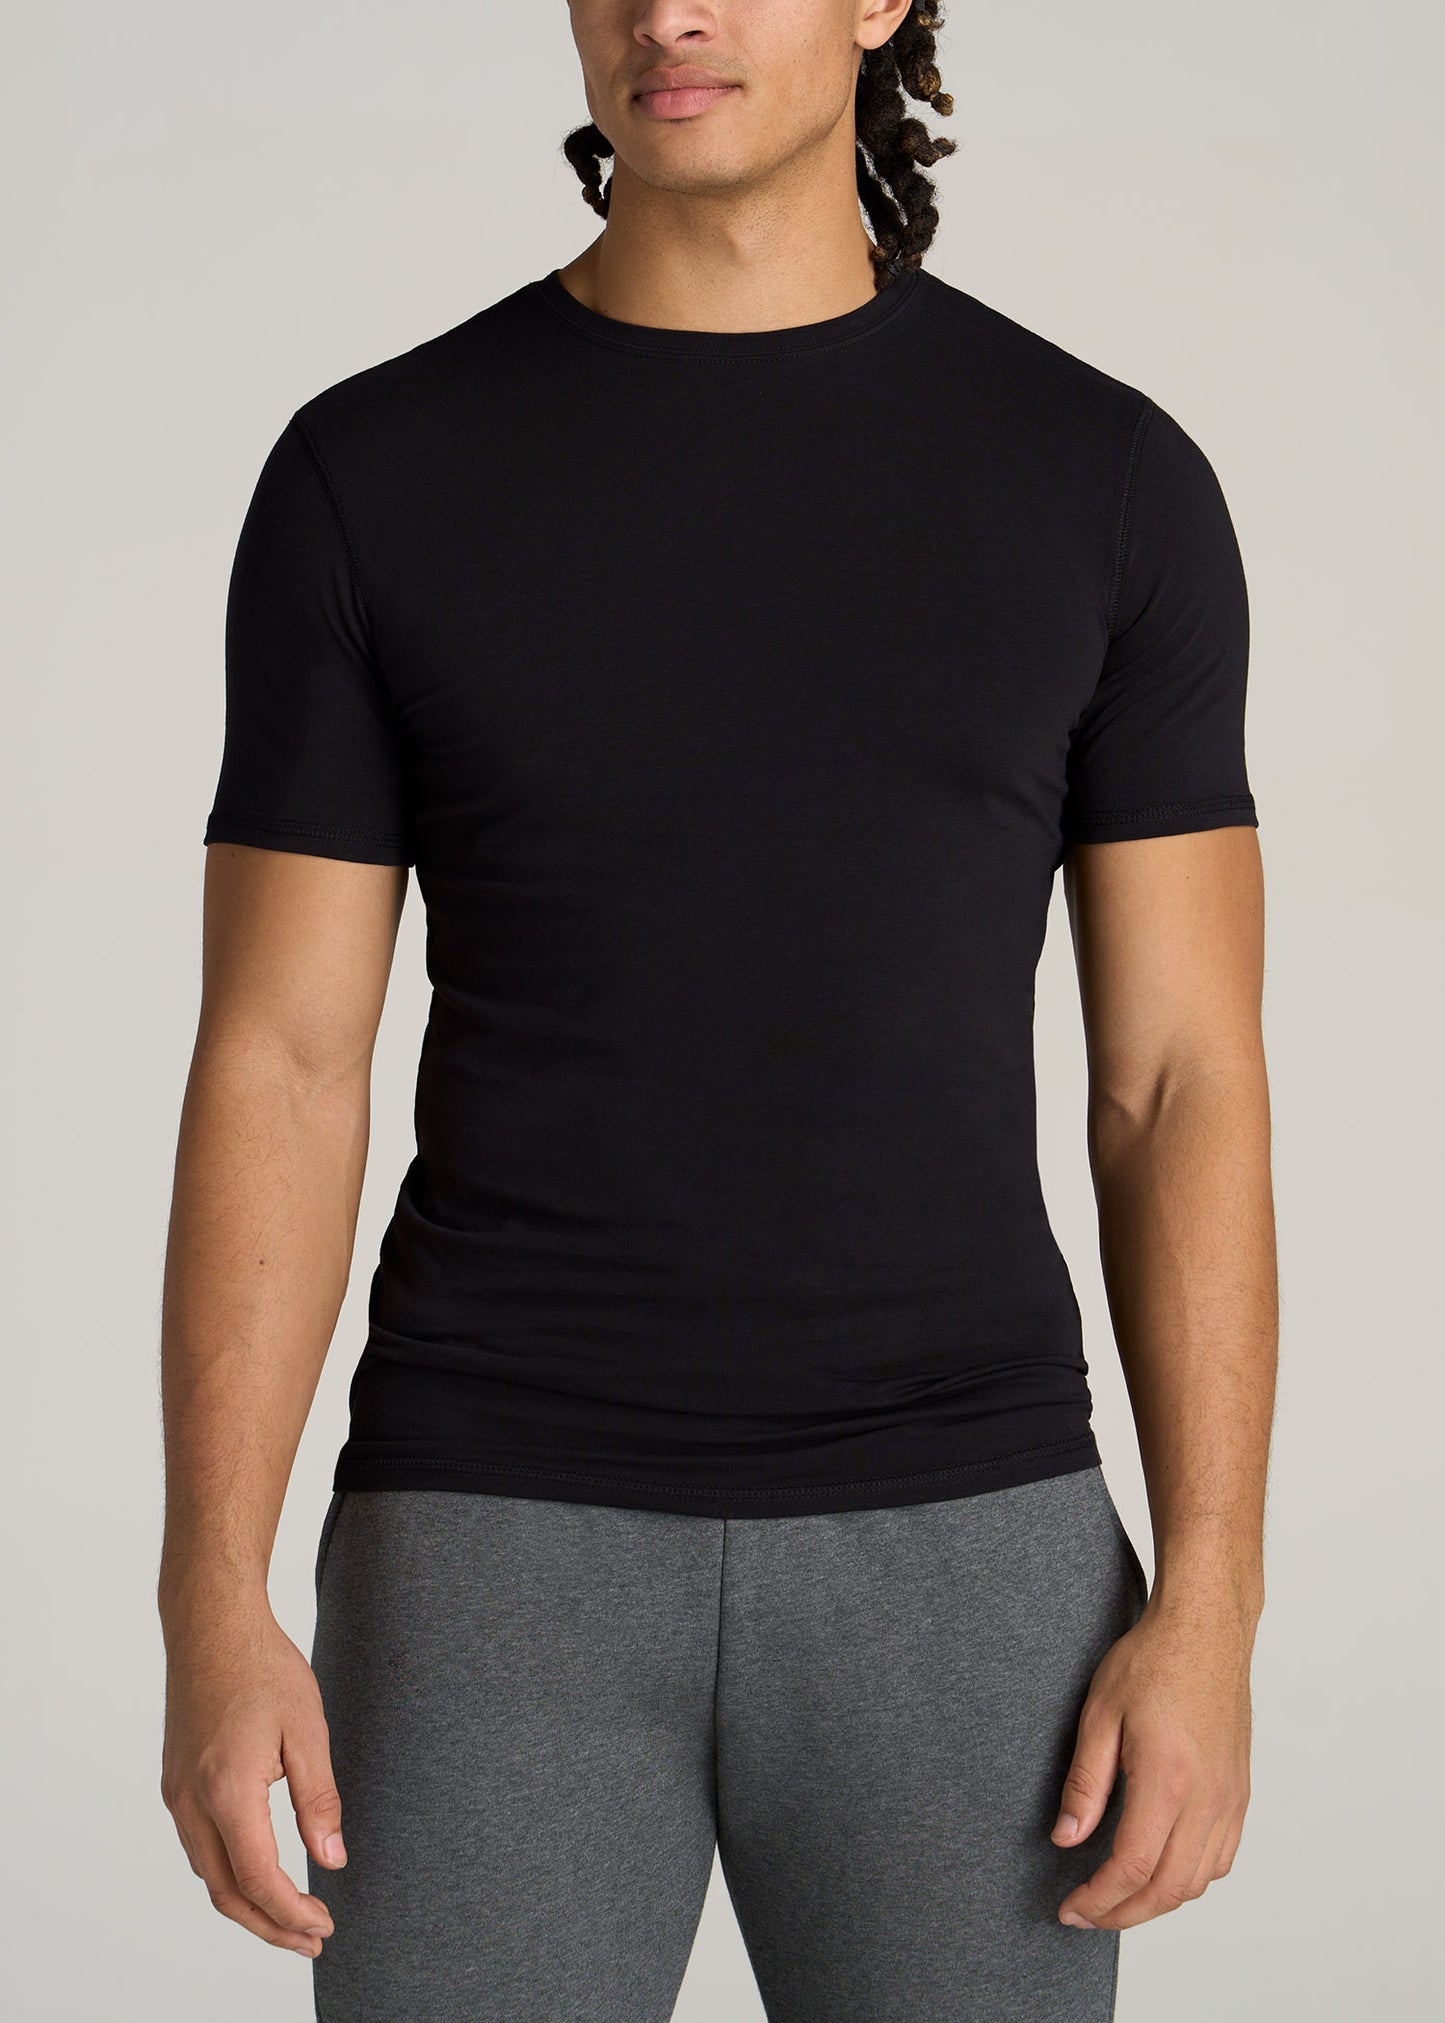 Slim Fit Black T-Shirt, Tall Men's Essentials